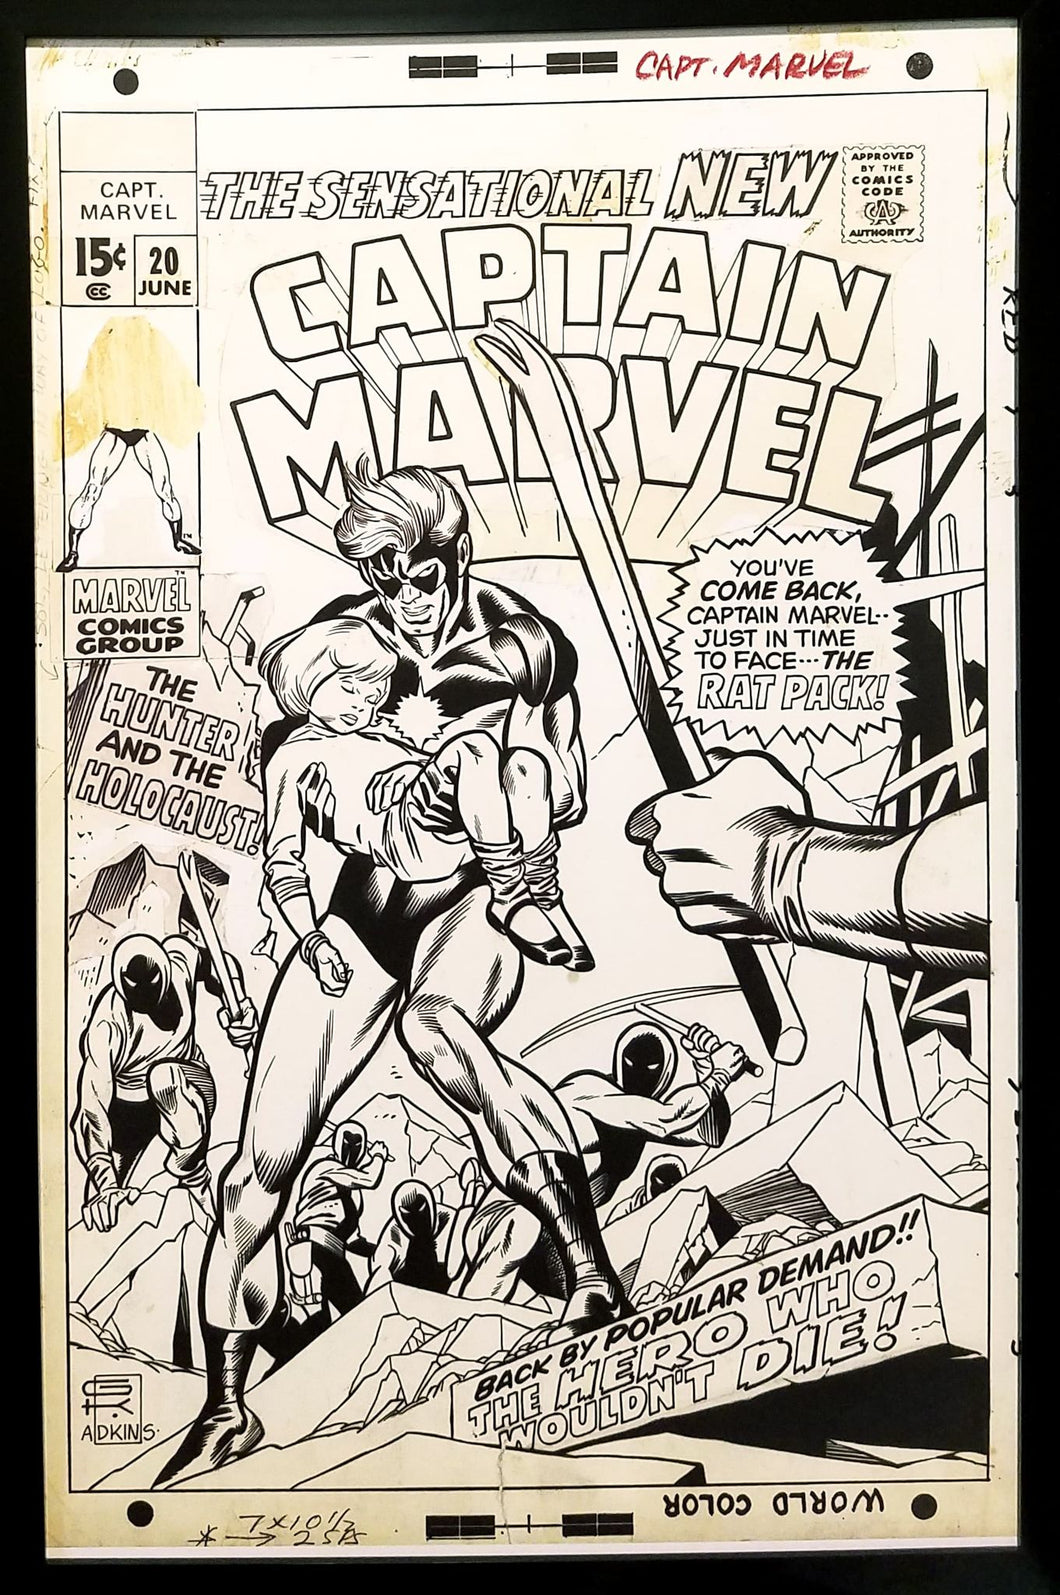 Captain Marvel #20 by Gil Kane 11x17 FRAMED Original Art Poster Marvel Comics